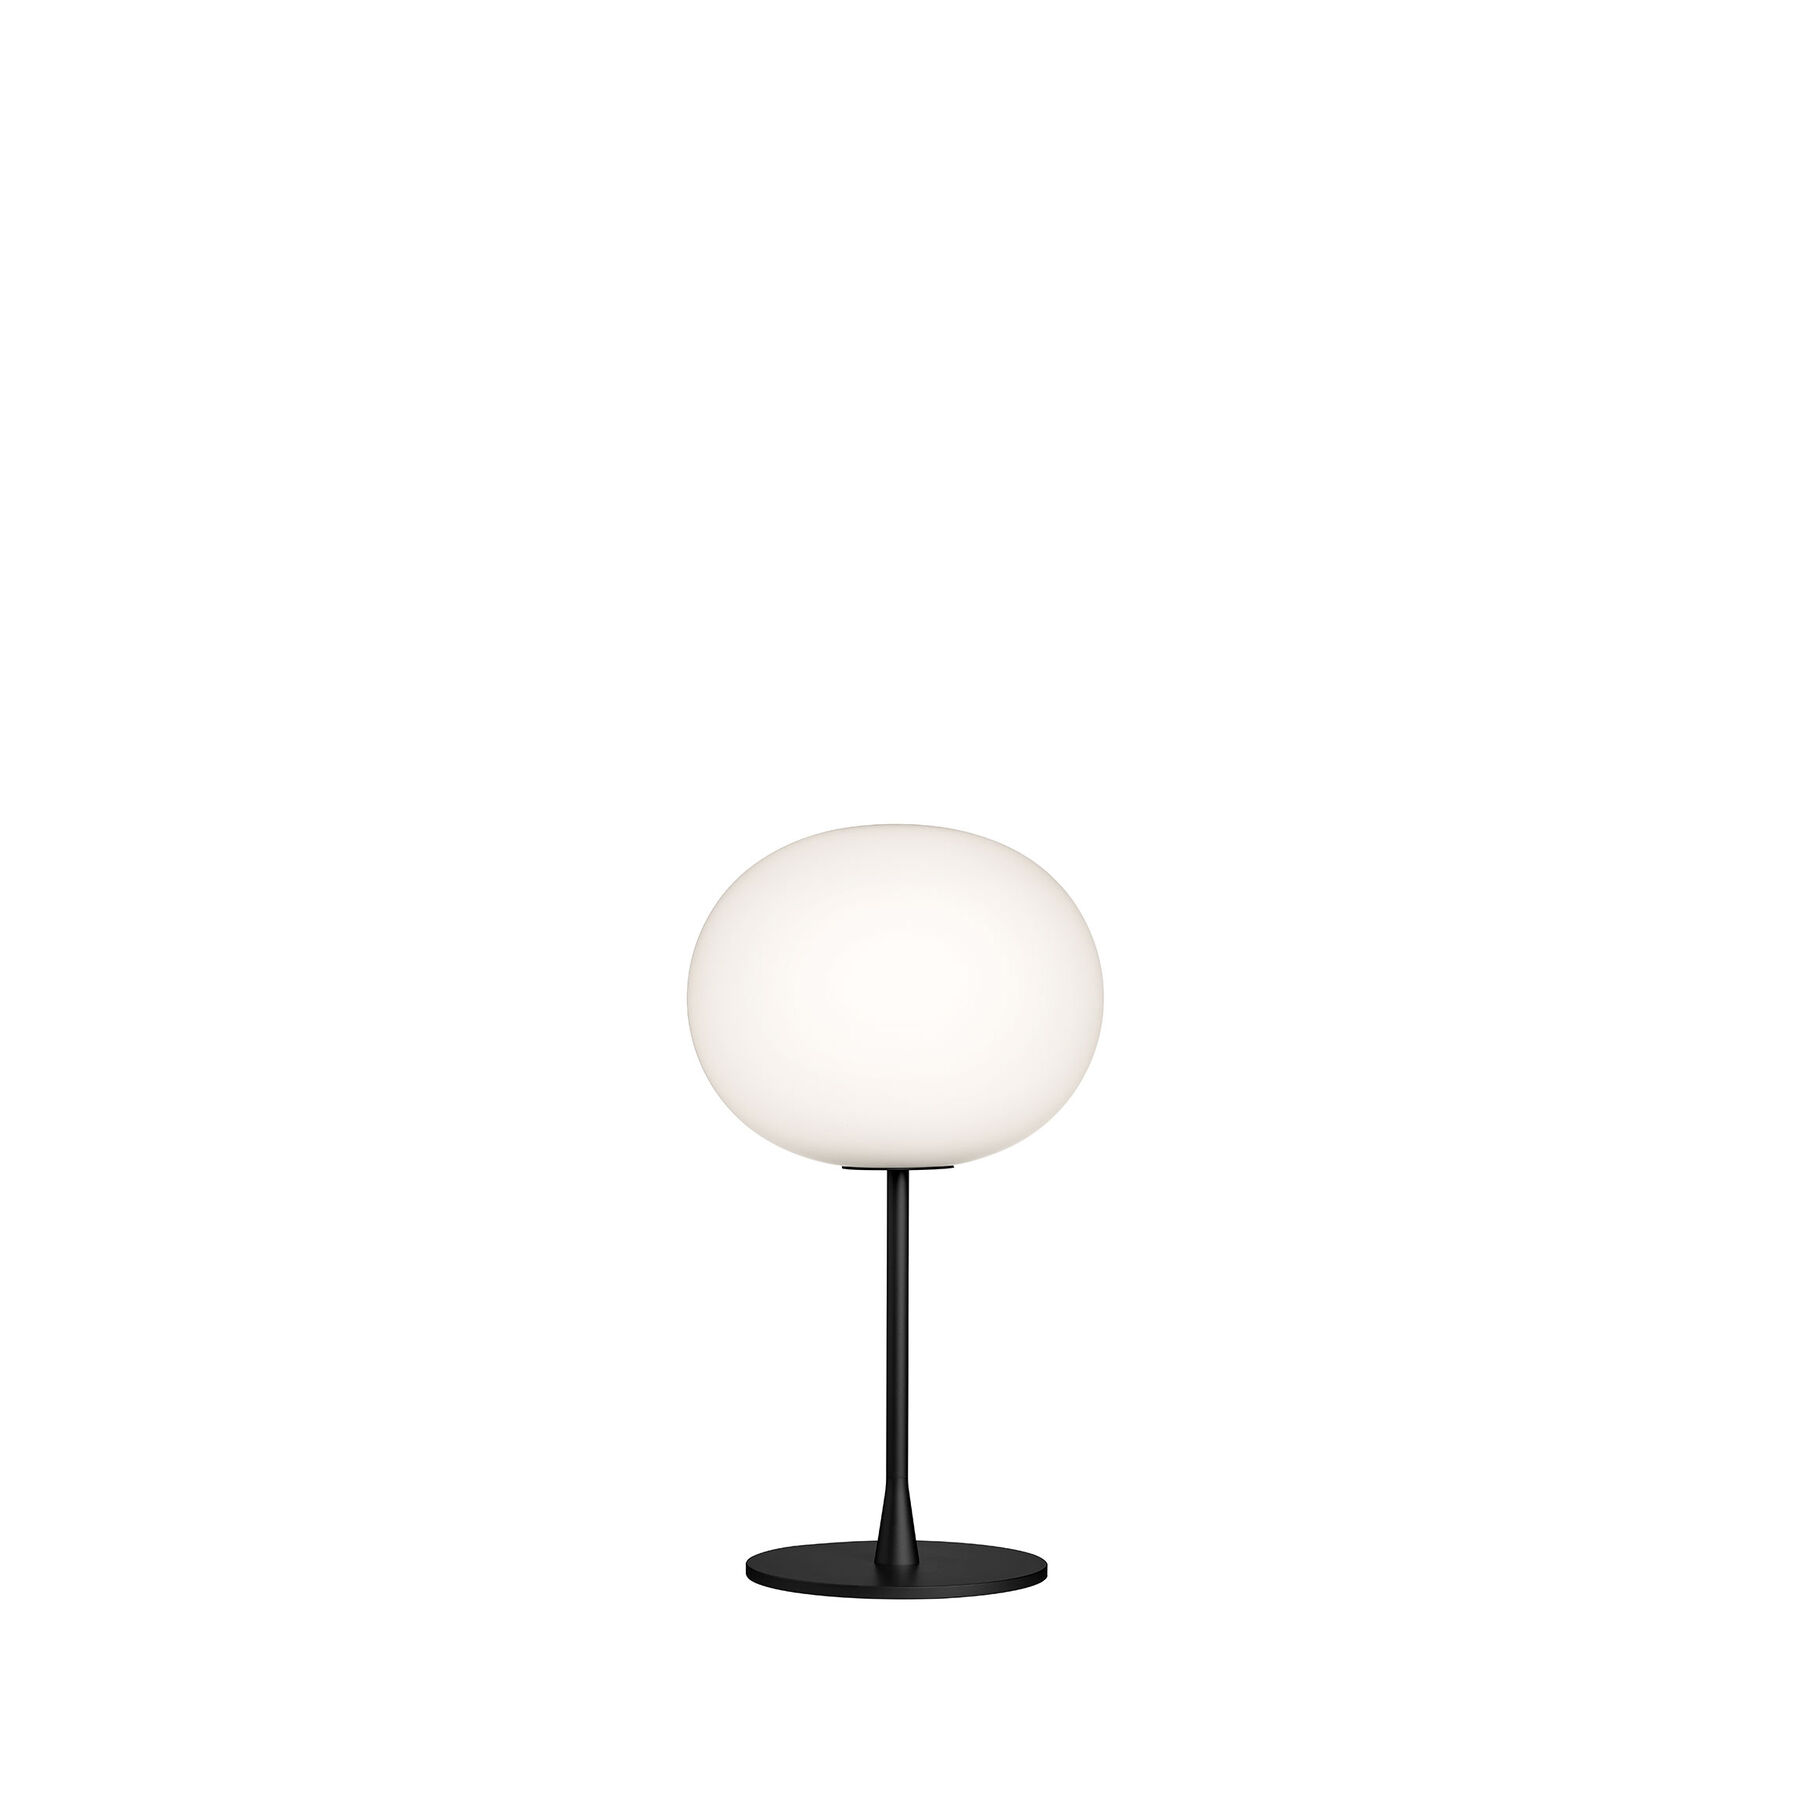 Купить Настольная лампа Glo-Ball Table 1 в интернет-магазине roooms.ru